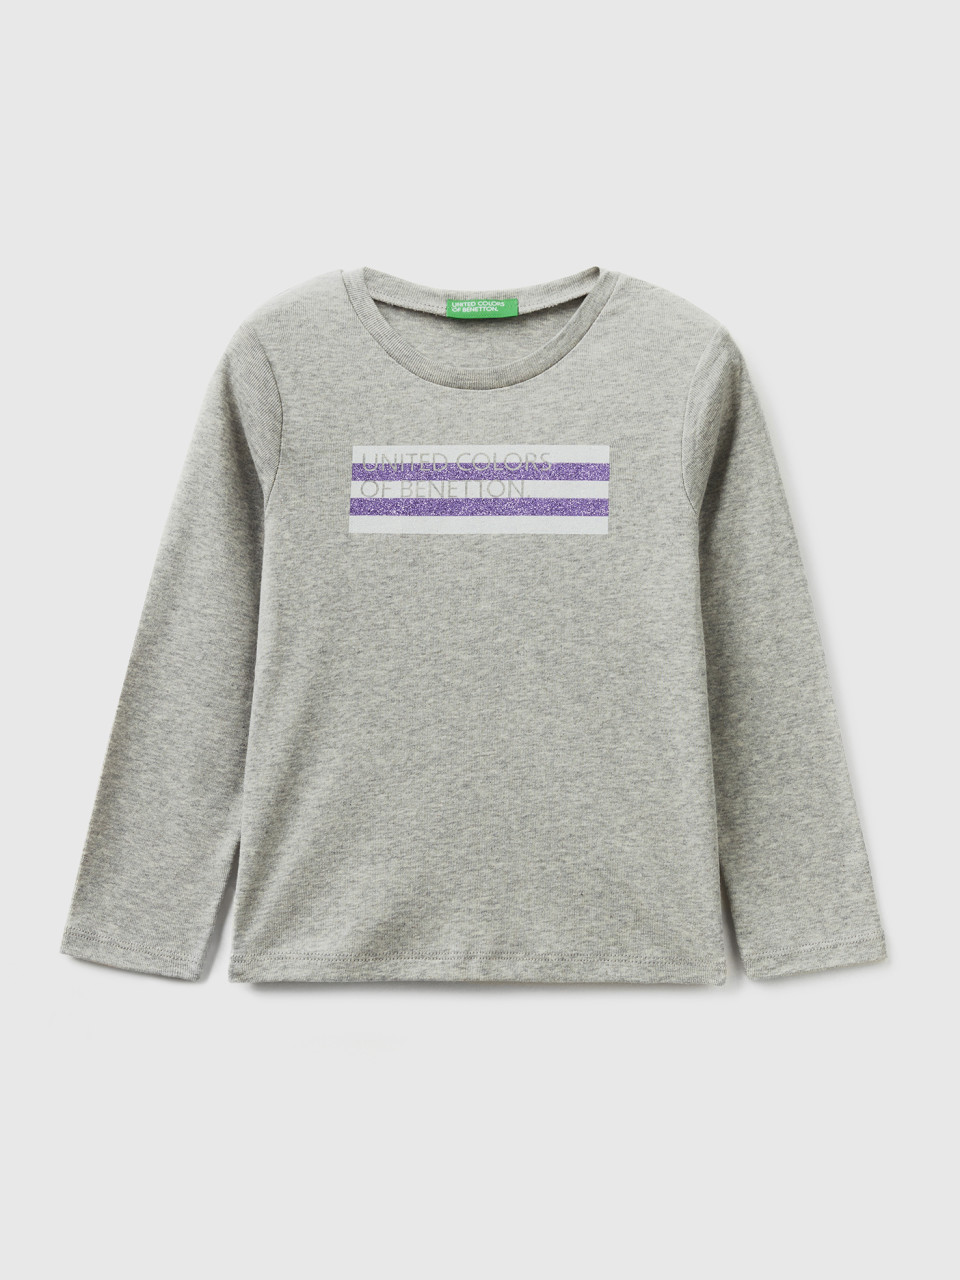 Benetton, Long Sleeve T-shirt With Glitter Print, Light Gray, Kids